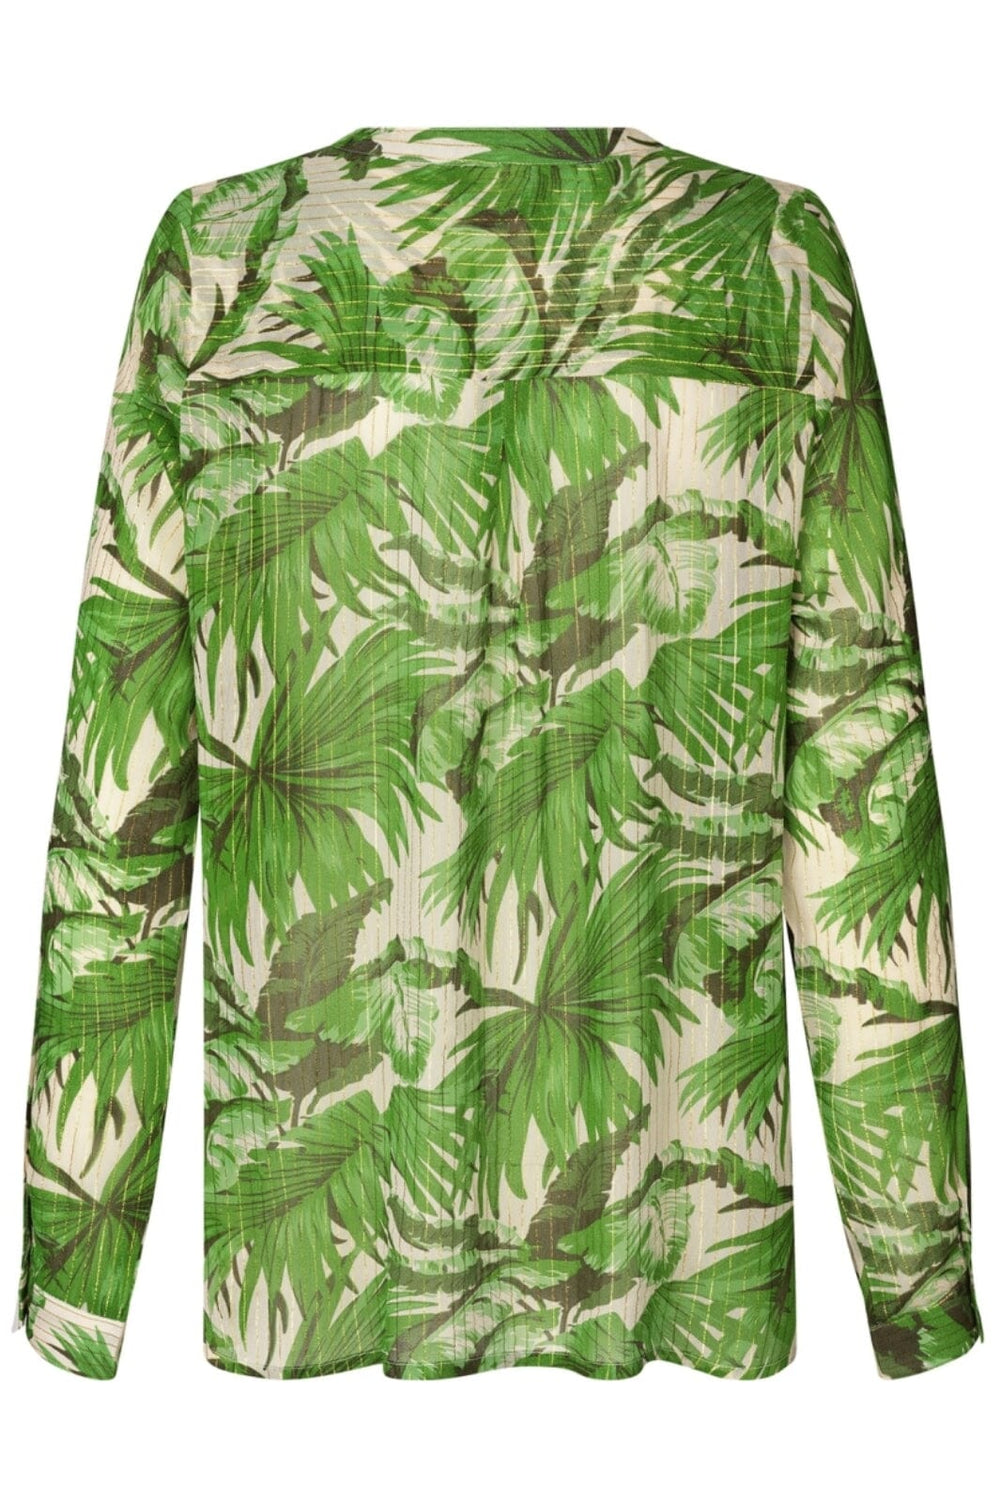 Lollys Laundry - HelenaLL Shirt LS - 40 Green Skjorter 